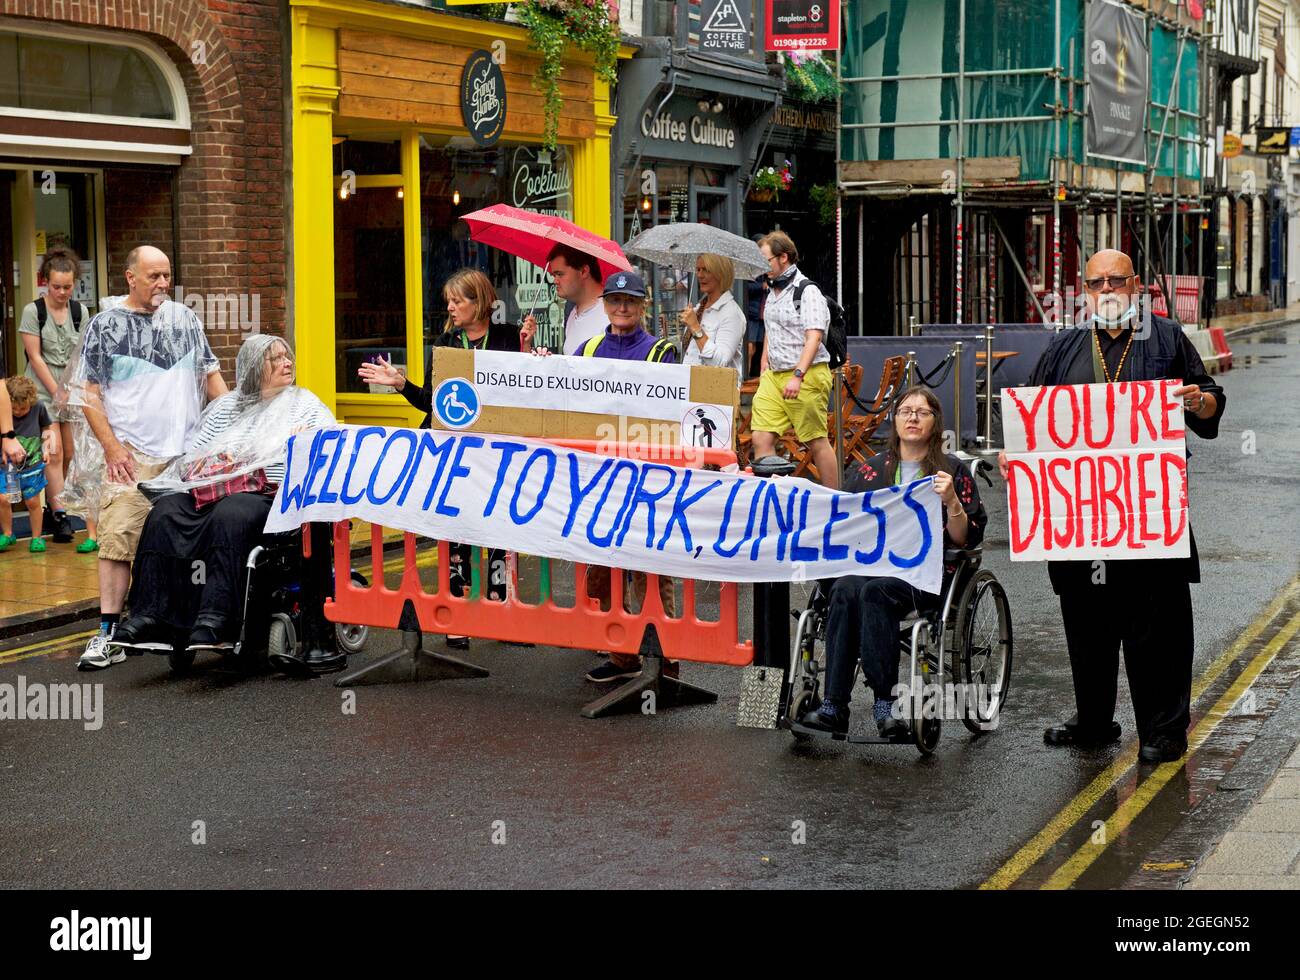 Gruppe von Menschen dämonisieren über schlechten Zugang zum Stadtzentrum von York für behinderte Menschen, England Großbritannien Stockfoto